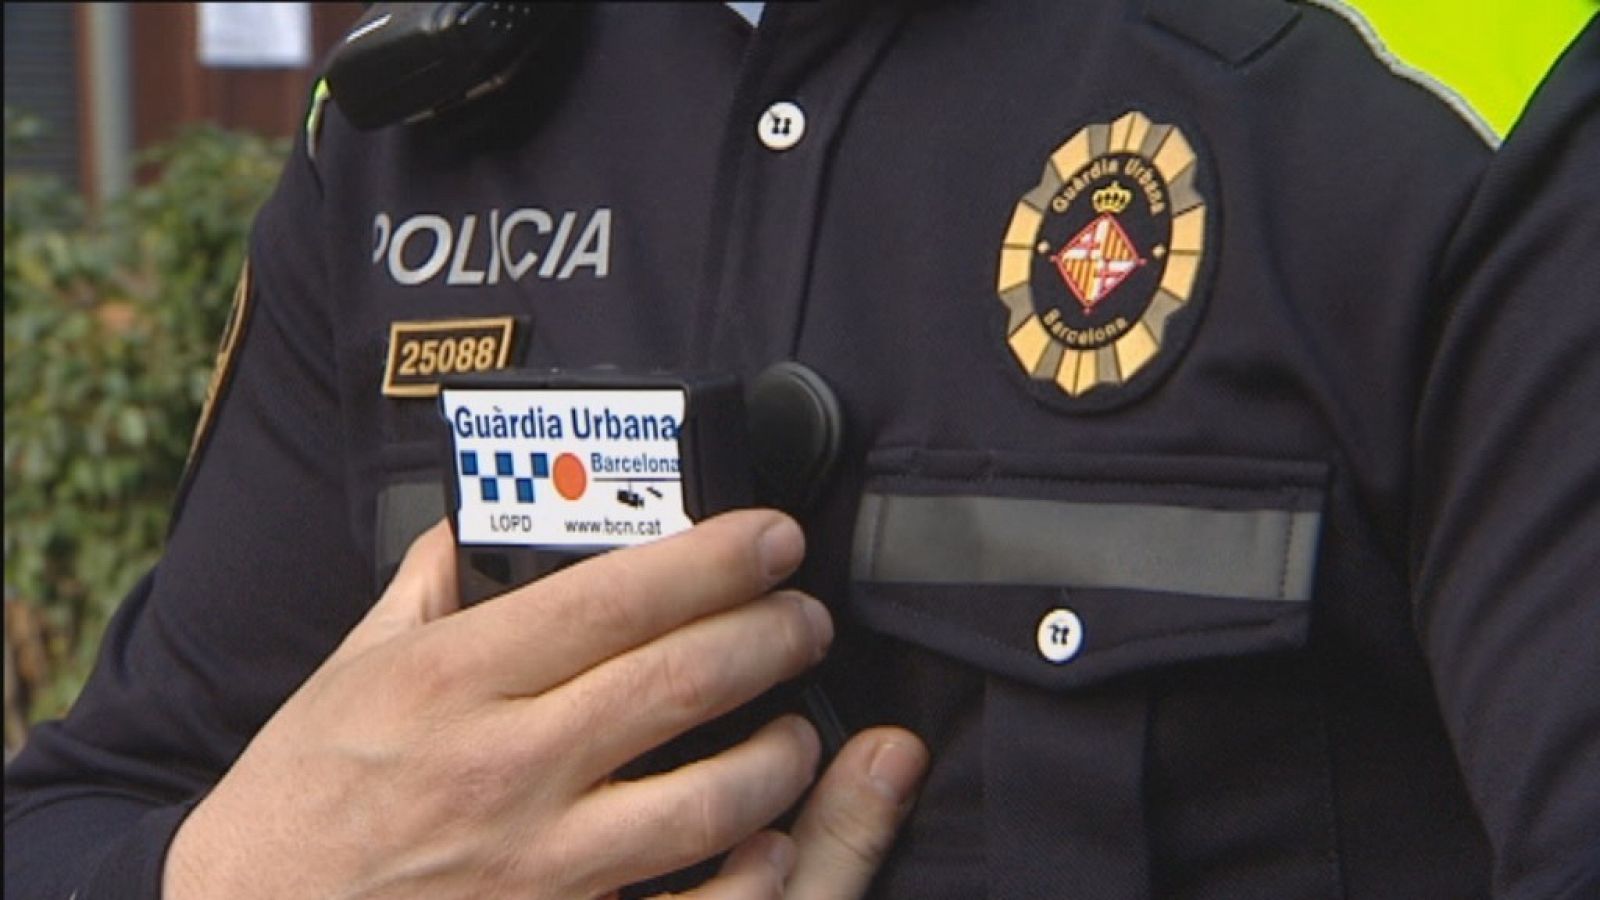 Nou dispositiu de gravació que utilitzaran els agents policials i que portaran incorporat a l'uniforme